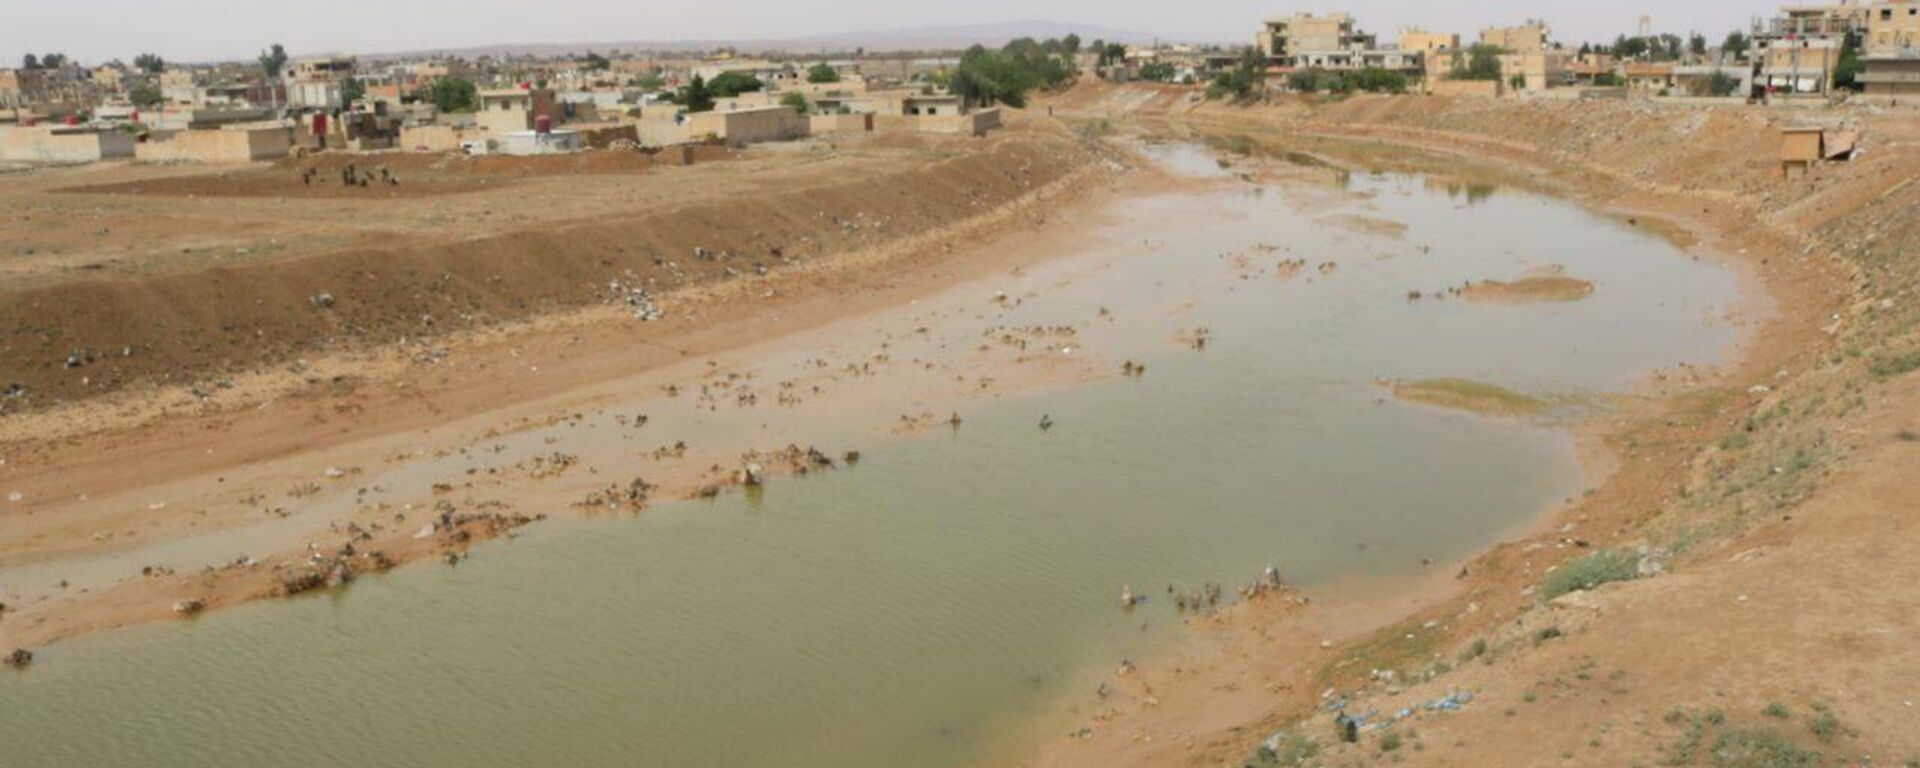 انخفاض تاريخي في منسوب نهر الفرات ينذر بكارثة إنسانية وبيئية خطيرة شرقي سوريا - سبوتنيك عربي, 1920, 09.05.2022